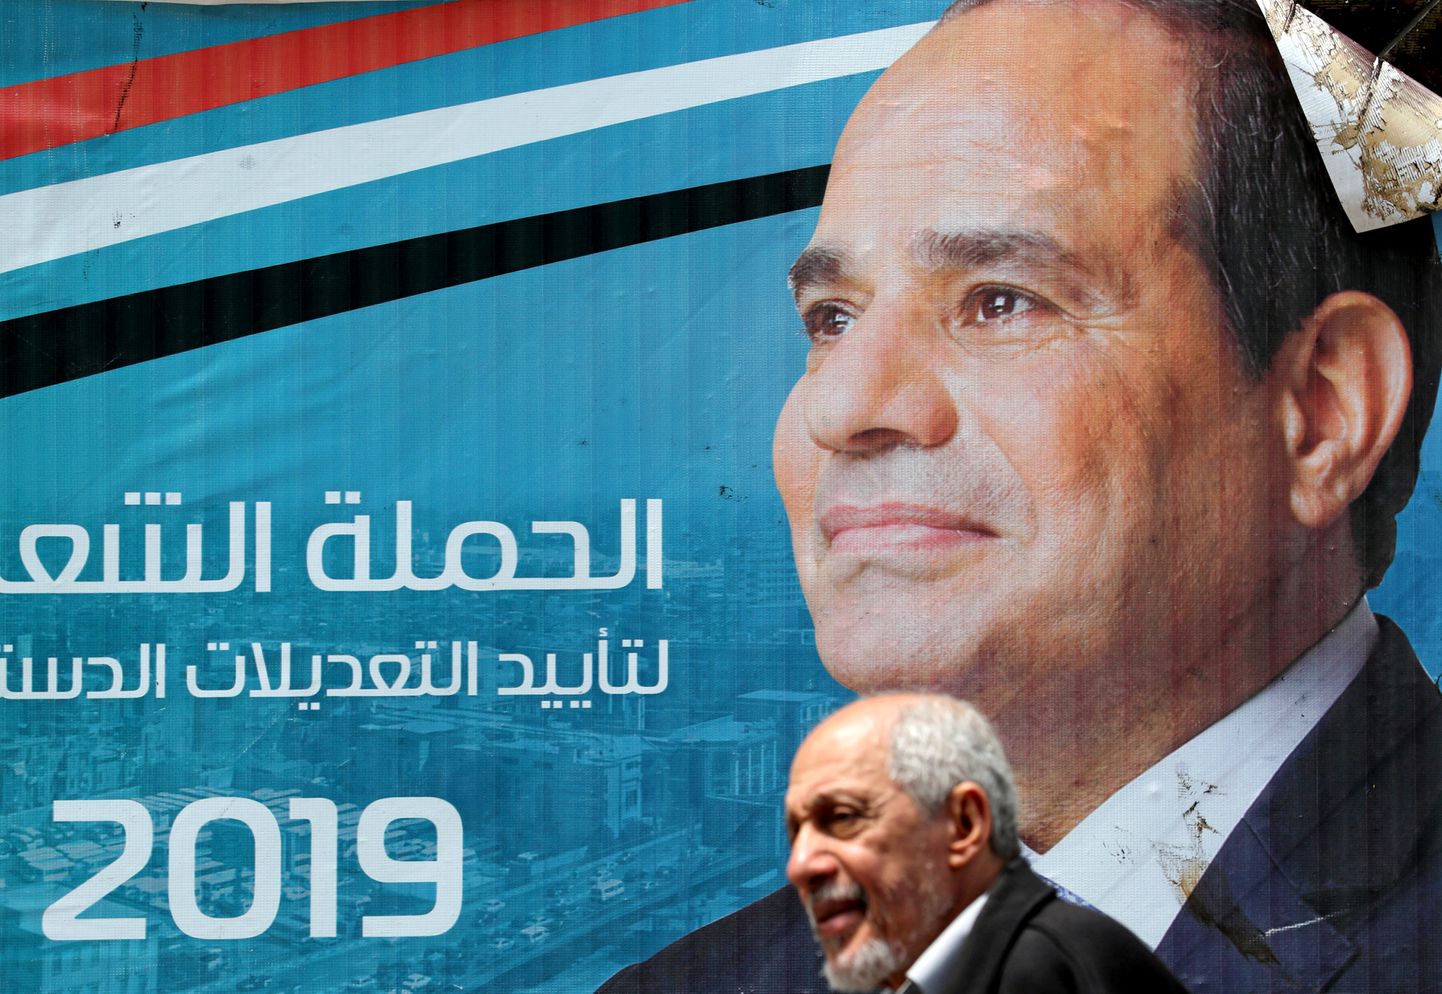 Mees möödumas Egiptuse presidendi Abdel Fattah al-Sisi plakatist.